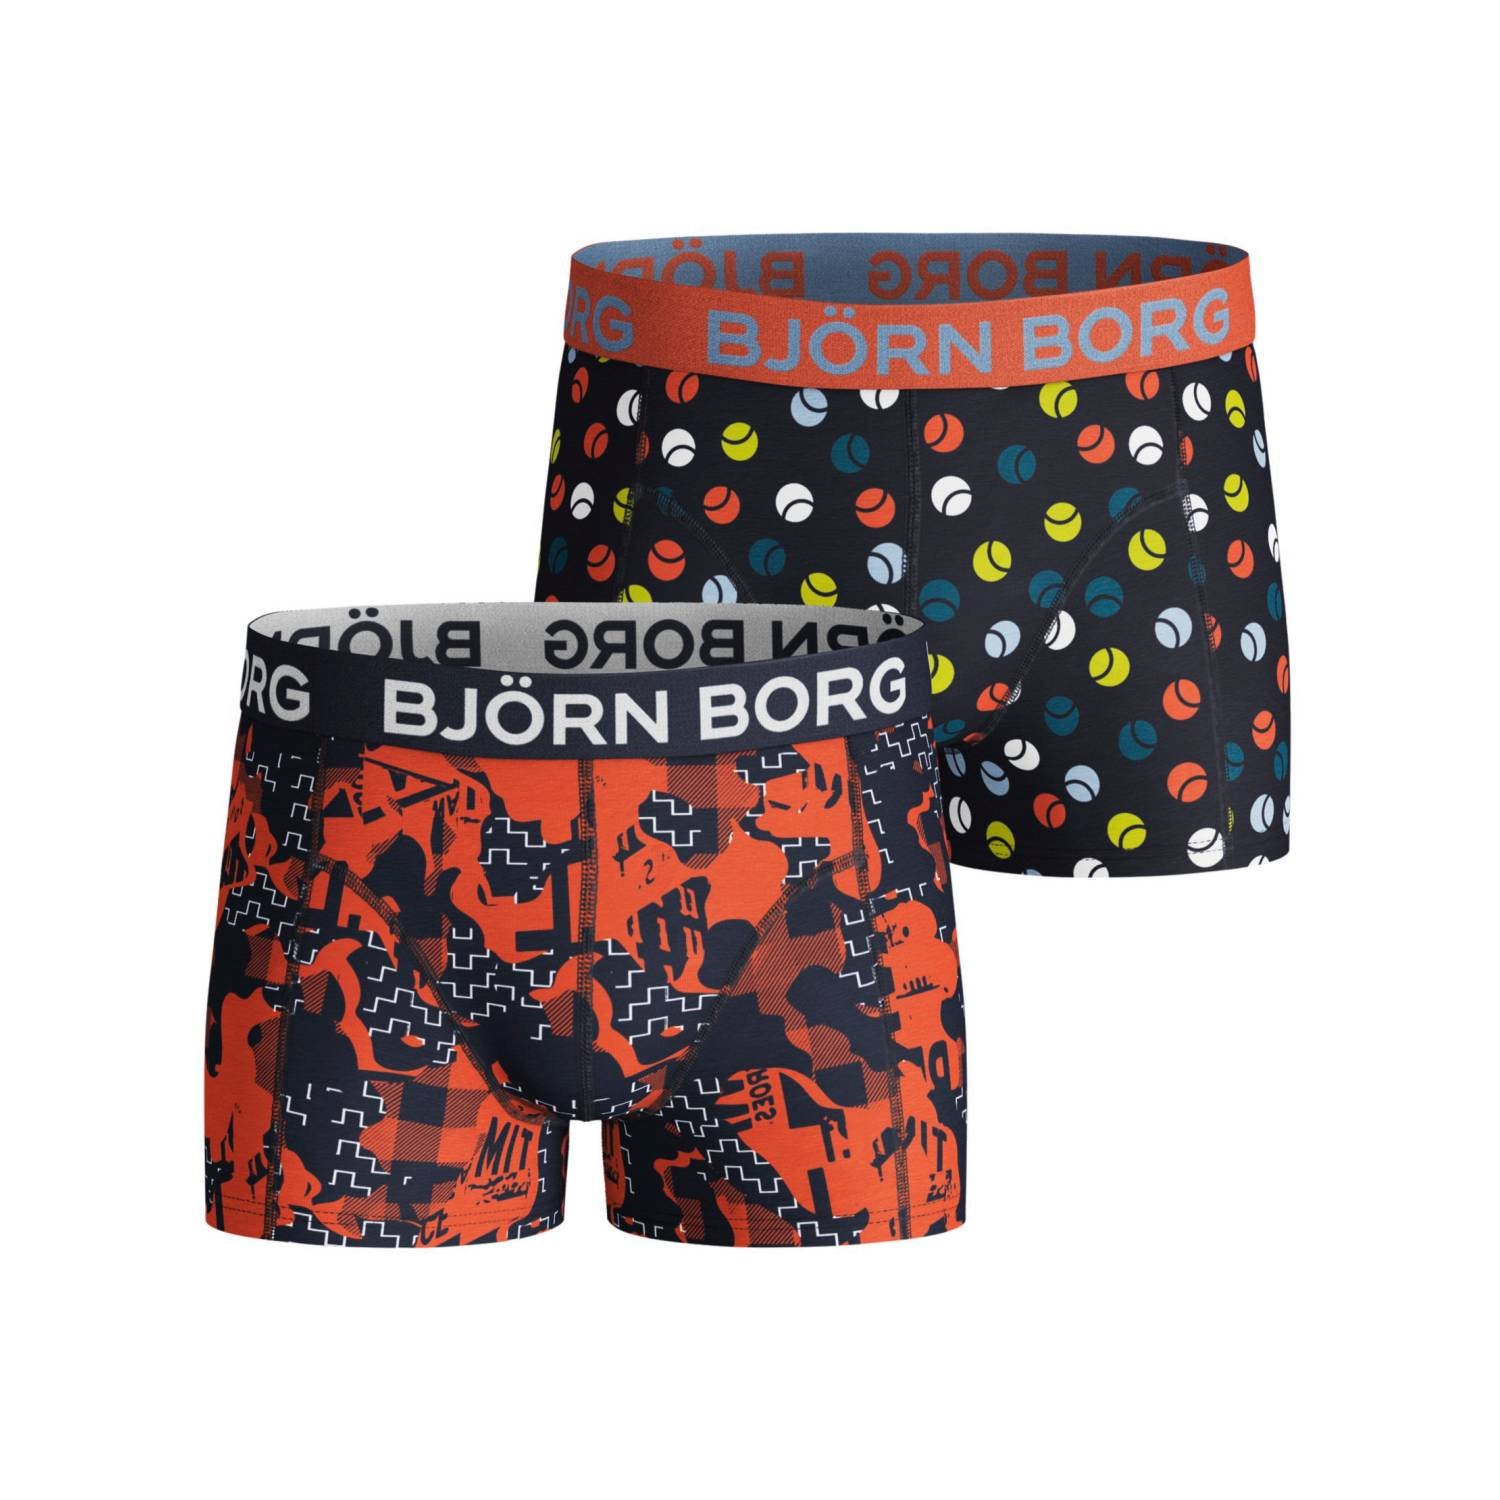 Björn Borg NY Shade and Tennisball Shorts For Boys